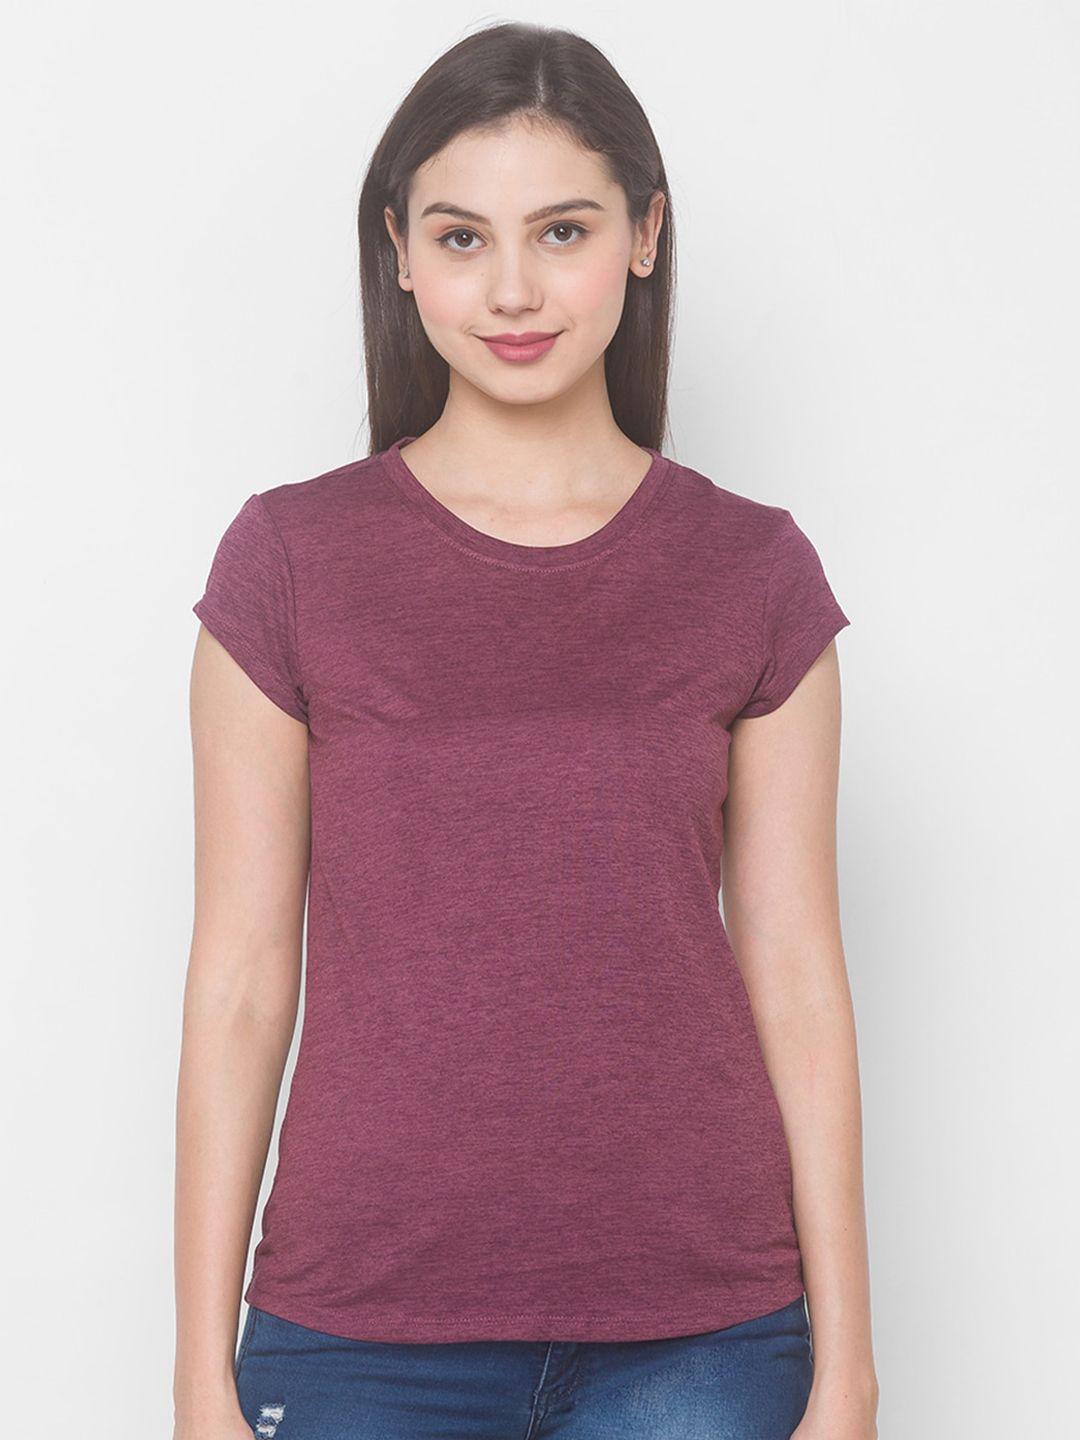 globus-women-maroon-t-shirt